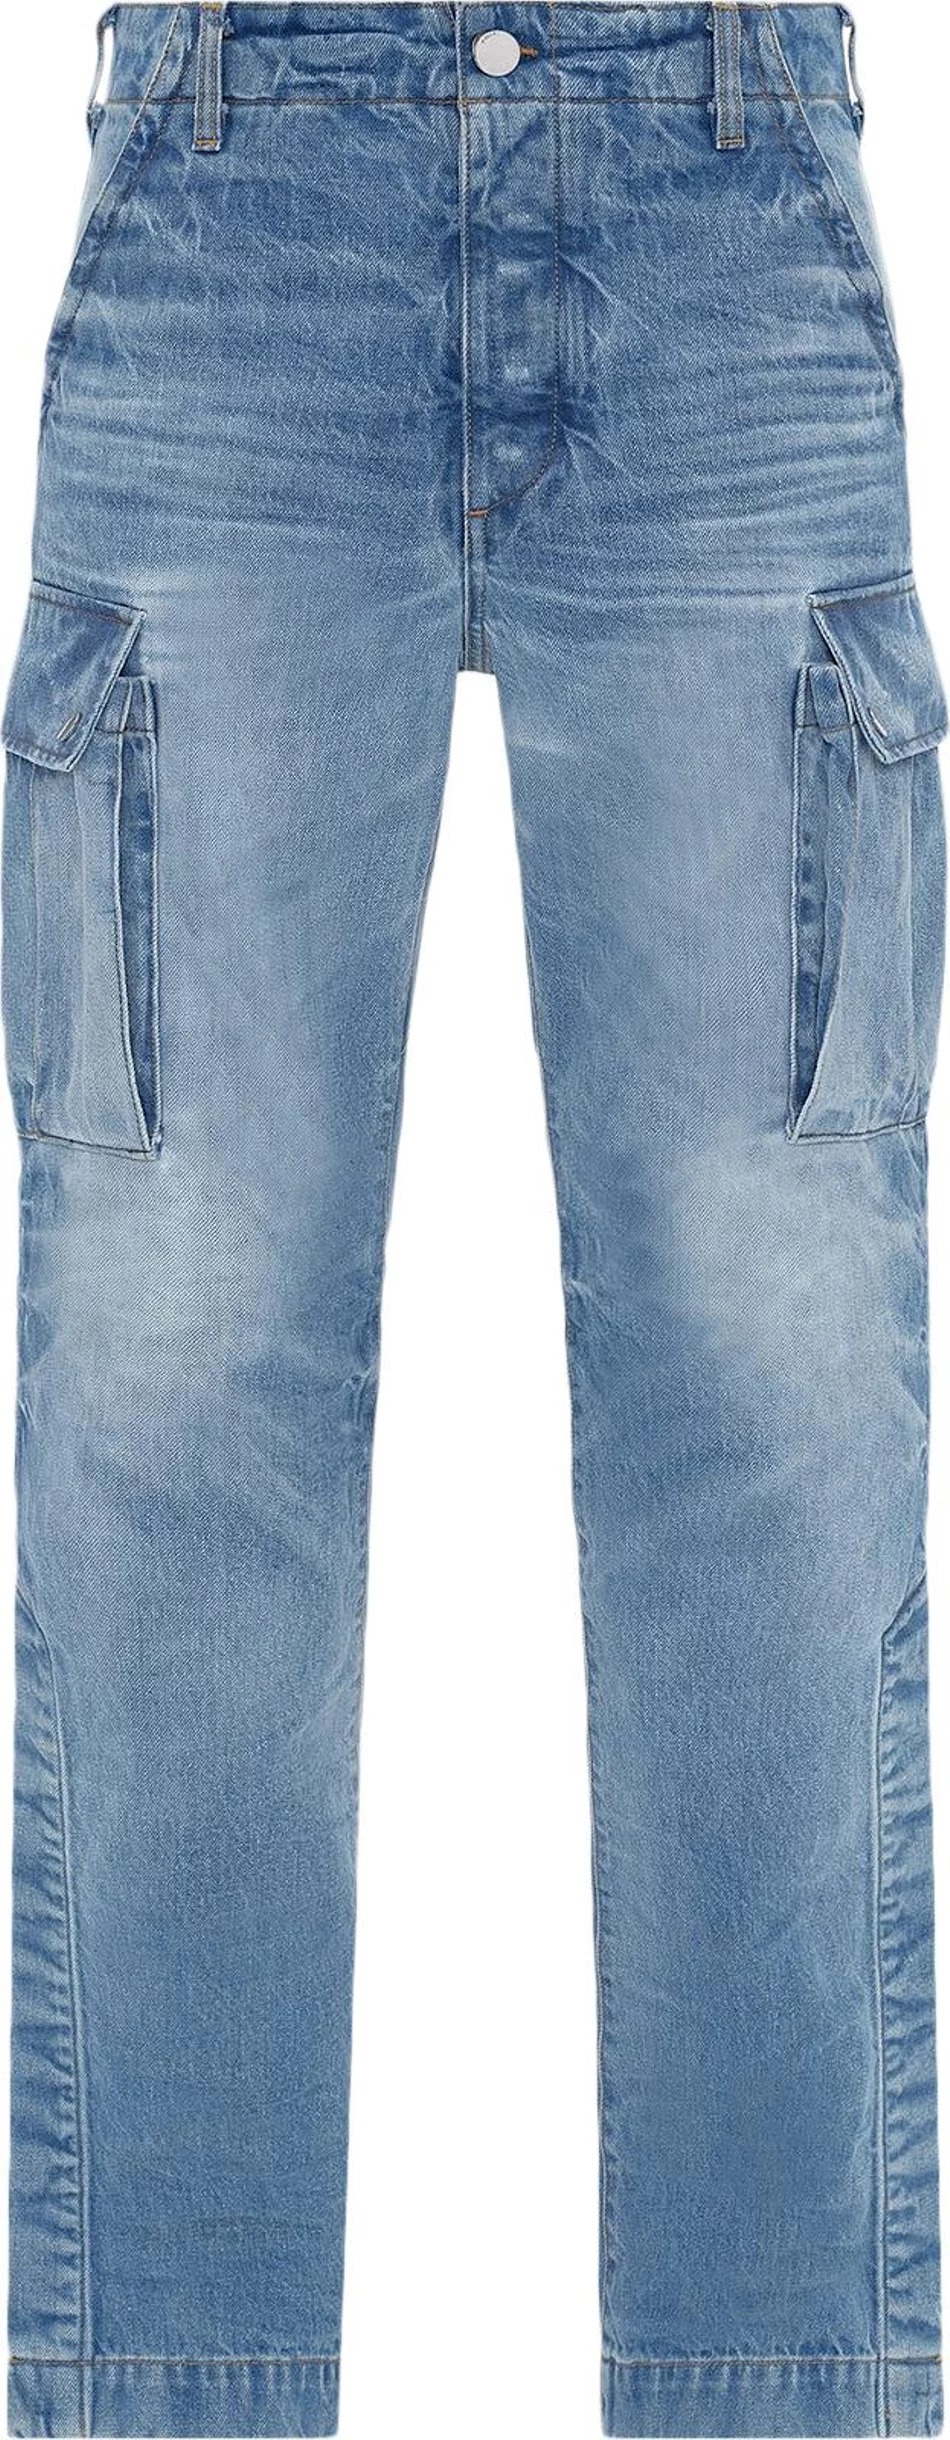 Джинсы Amiri M65 Cargo Kick Flare, синий 2022 джинсы для мужчин и женщин мужские винтажные джинсы с вышивкой джинсы мешковатые джинсы с карманами джинсы с пуговицами джинсовые брю